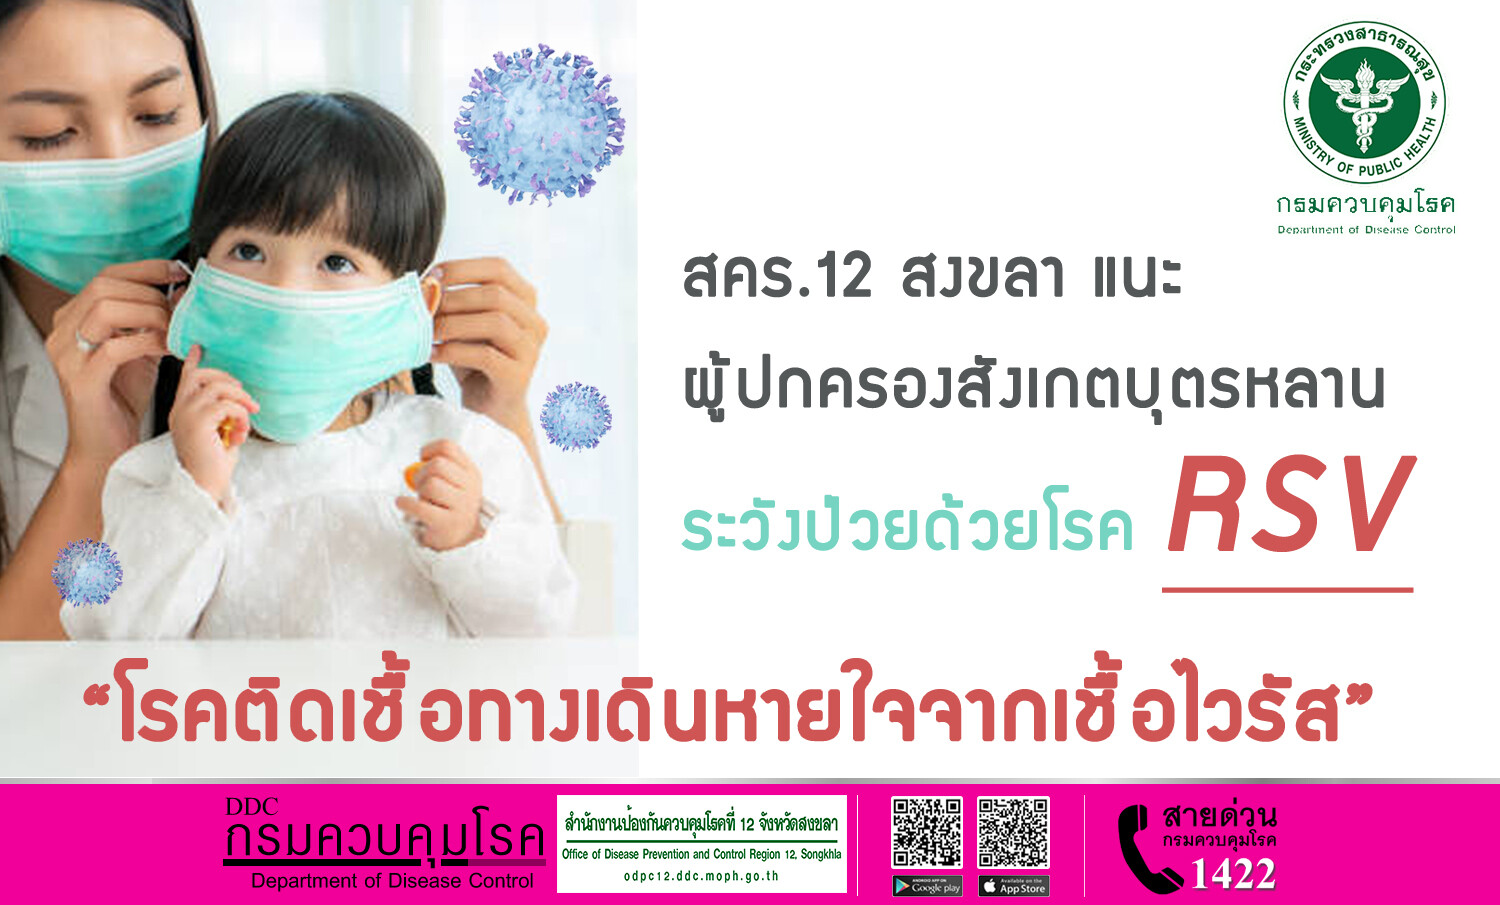 สคร.12 สงขลา แนะ ผู้ปกครองสังเกตบุตรหลาน ระวังป่วยด้วยโรคติดเชื้อทางเดินหายใจจากเชื้อไวรัส (RSV)